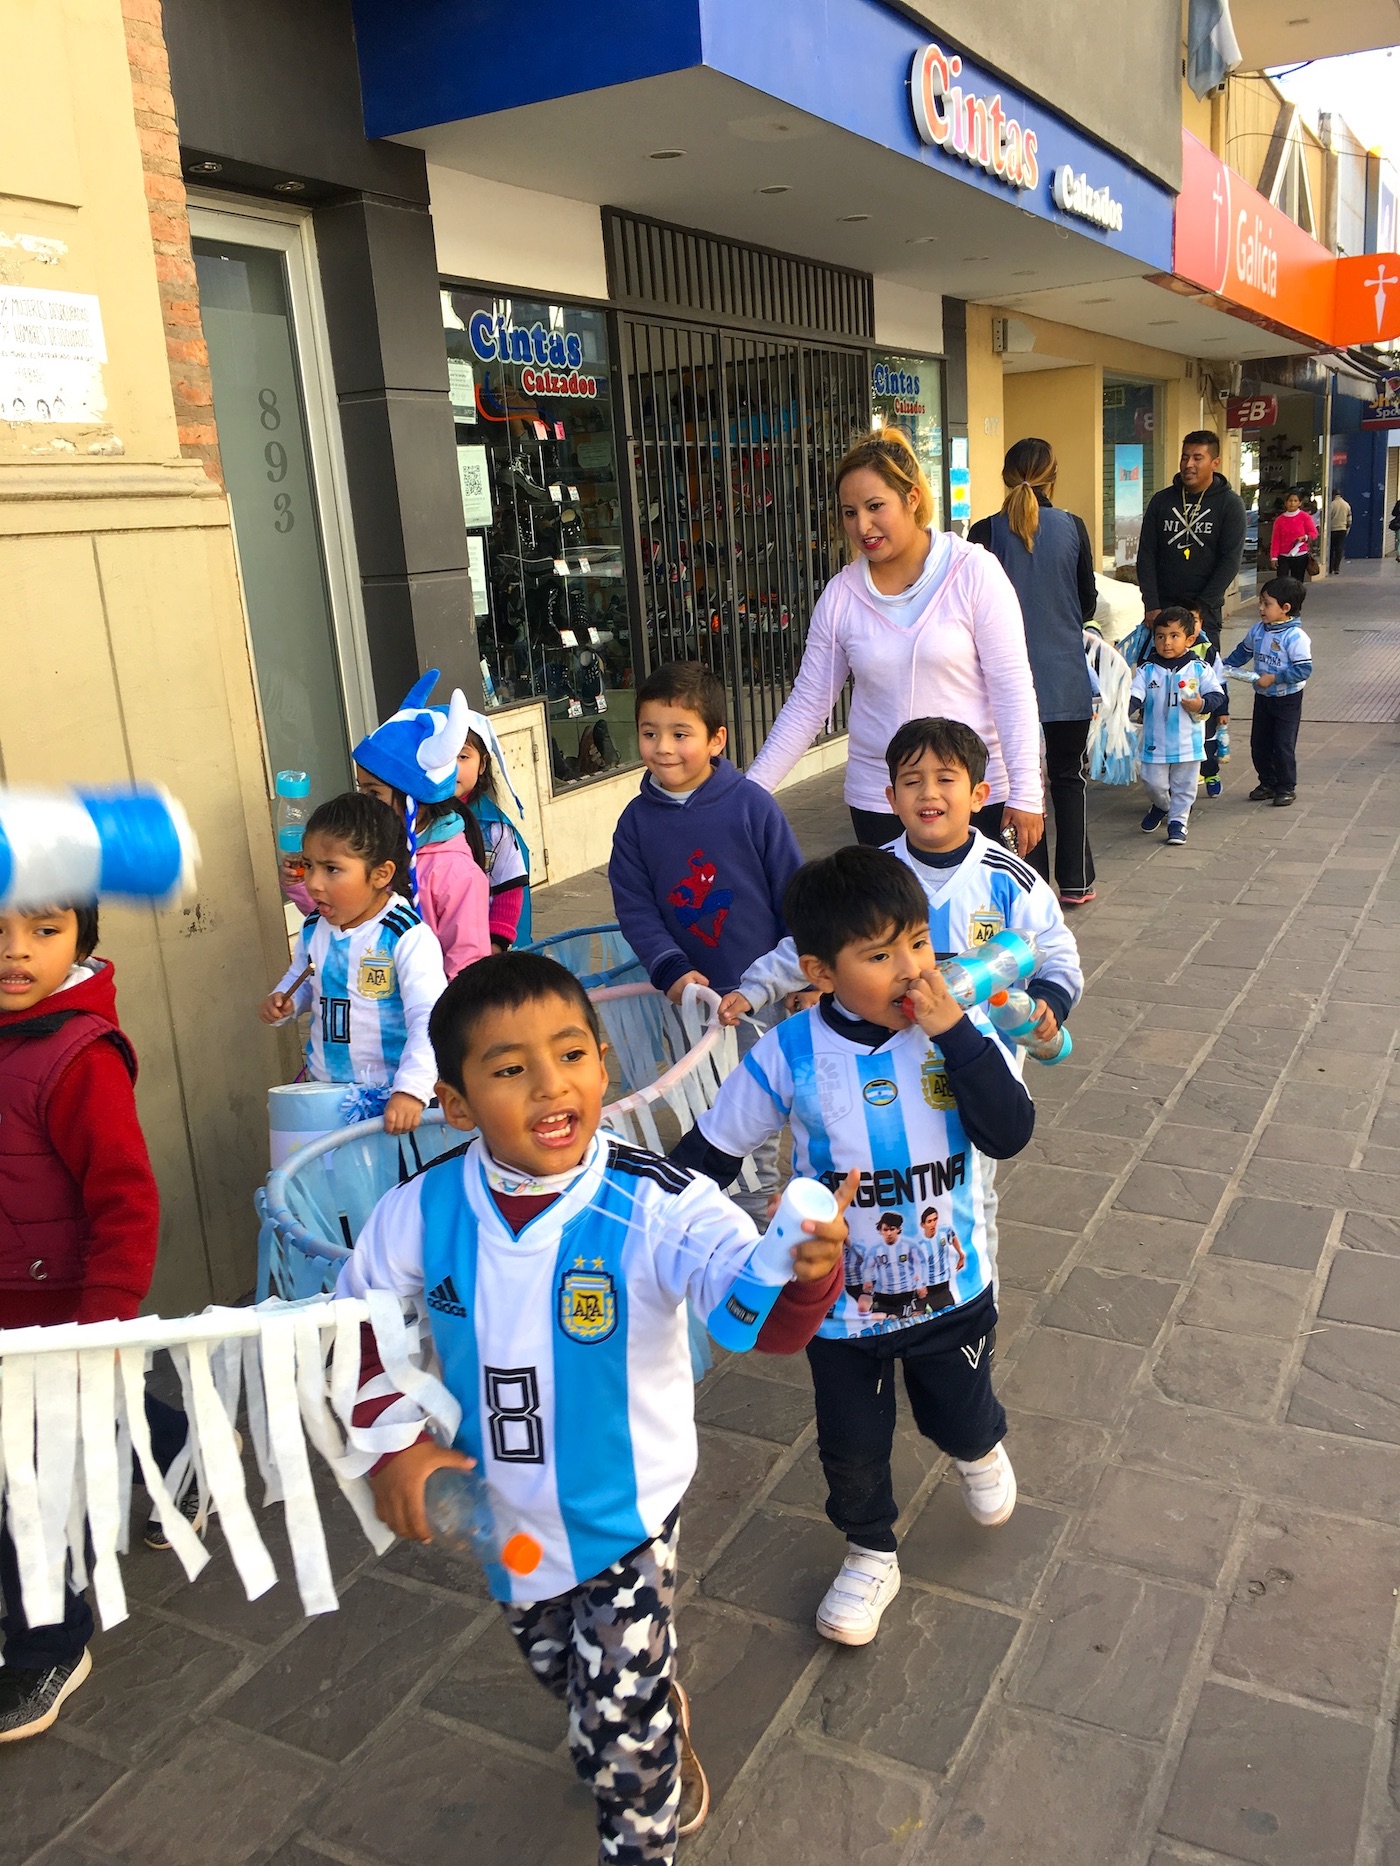 Cheerful encounter in Santiago de Jujuy, Argentina